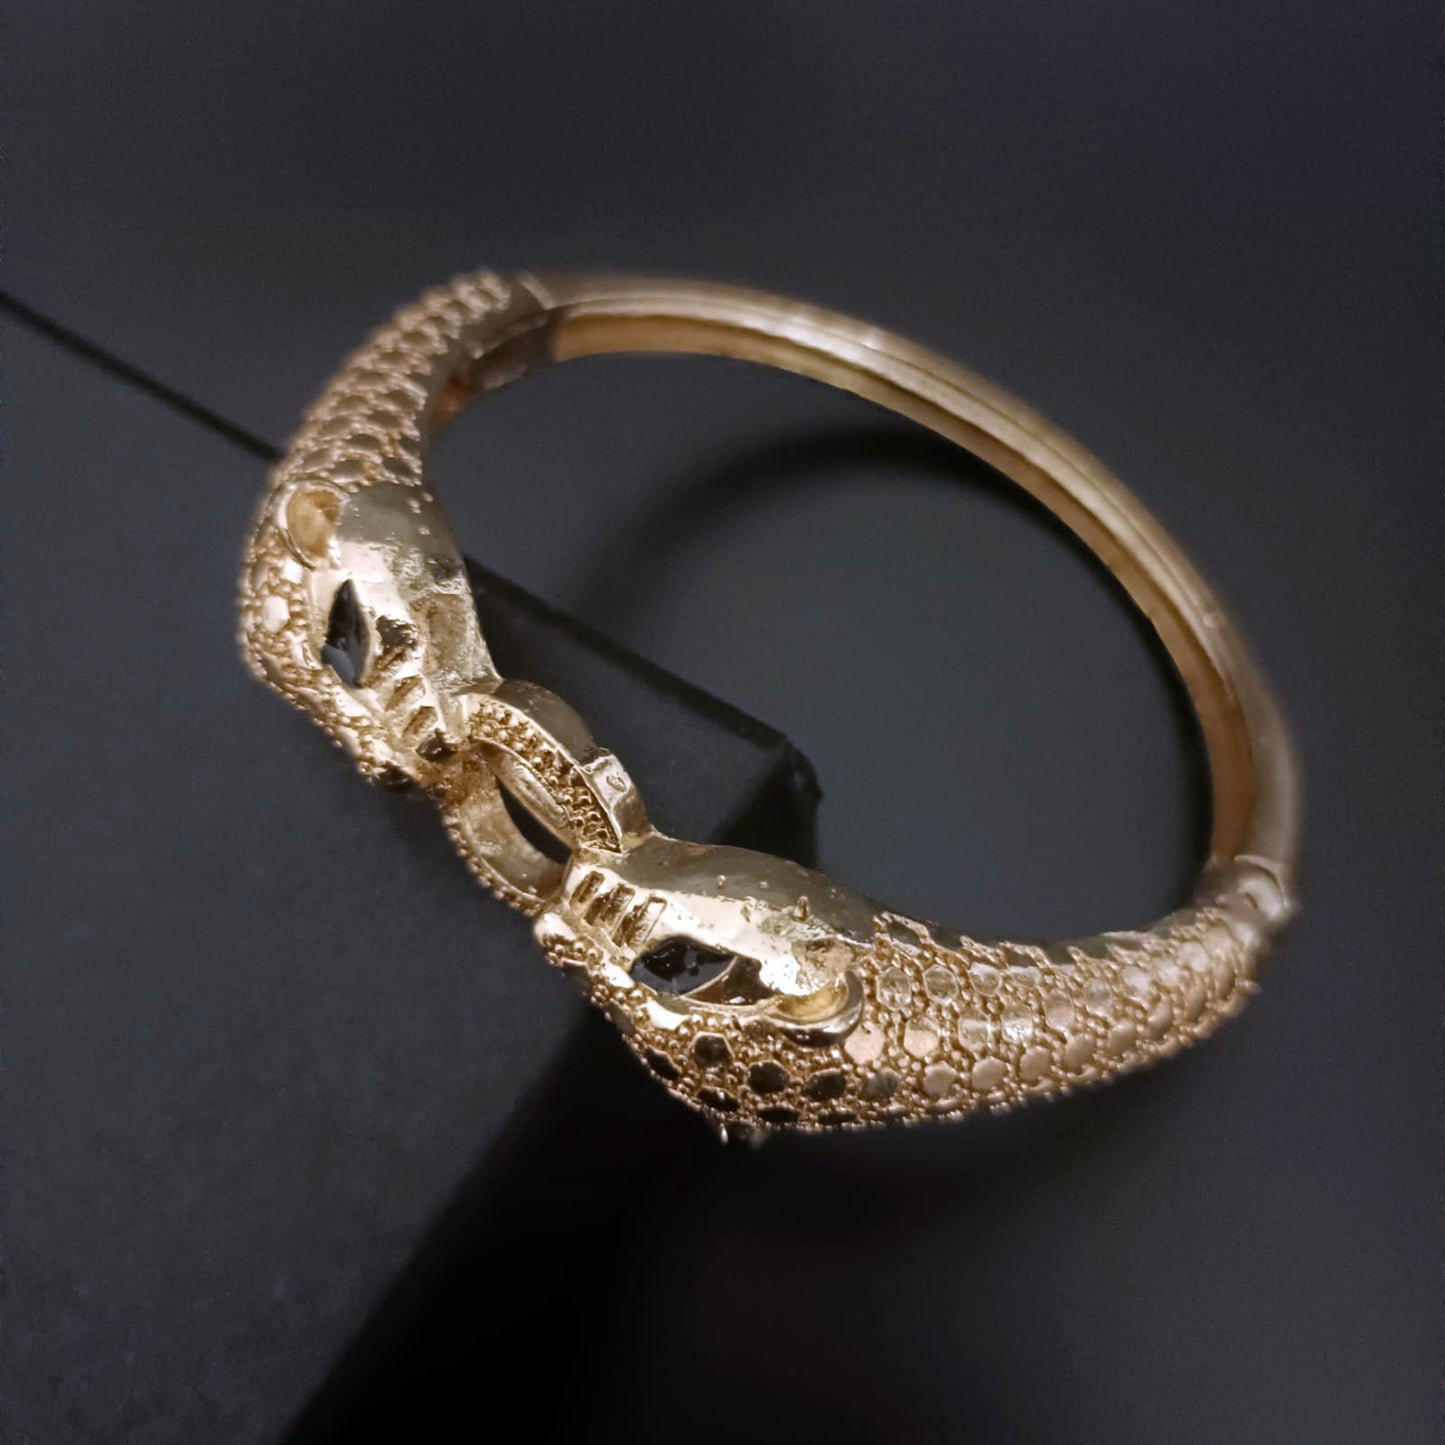 New Gold Jaguar Bracelet For Men-Jack Marc - JACKMARC.COM